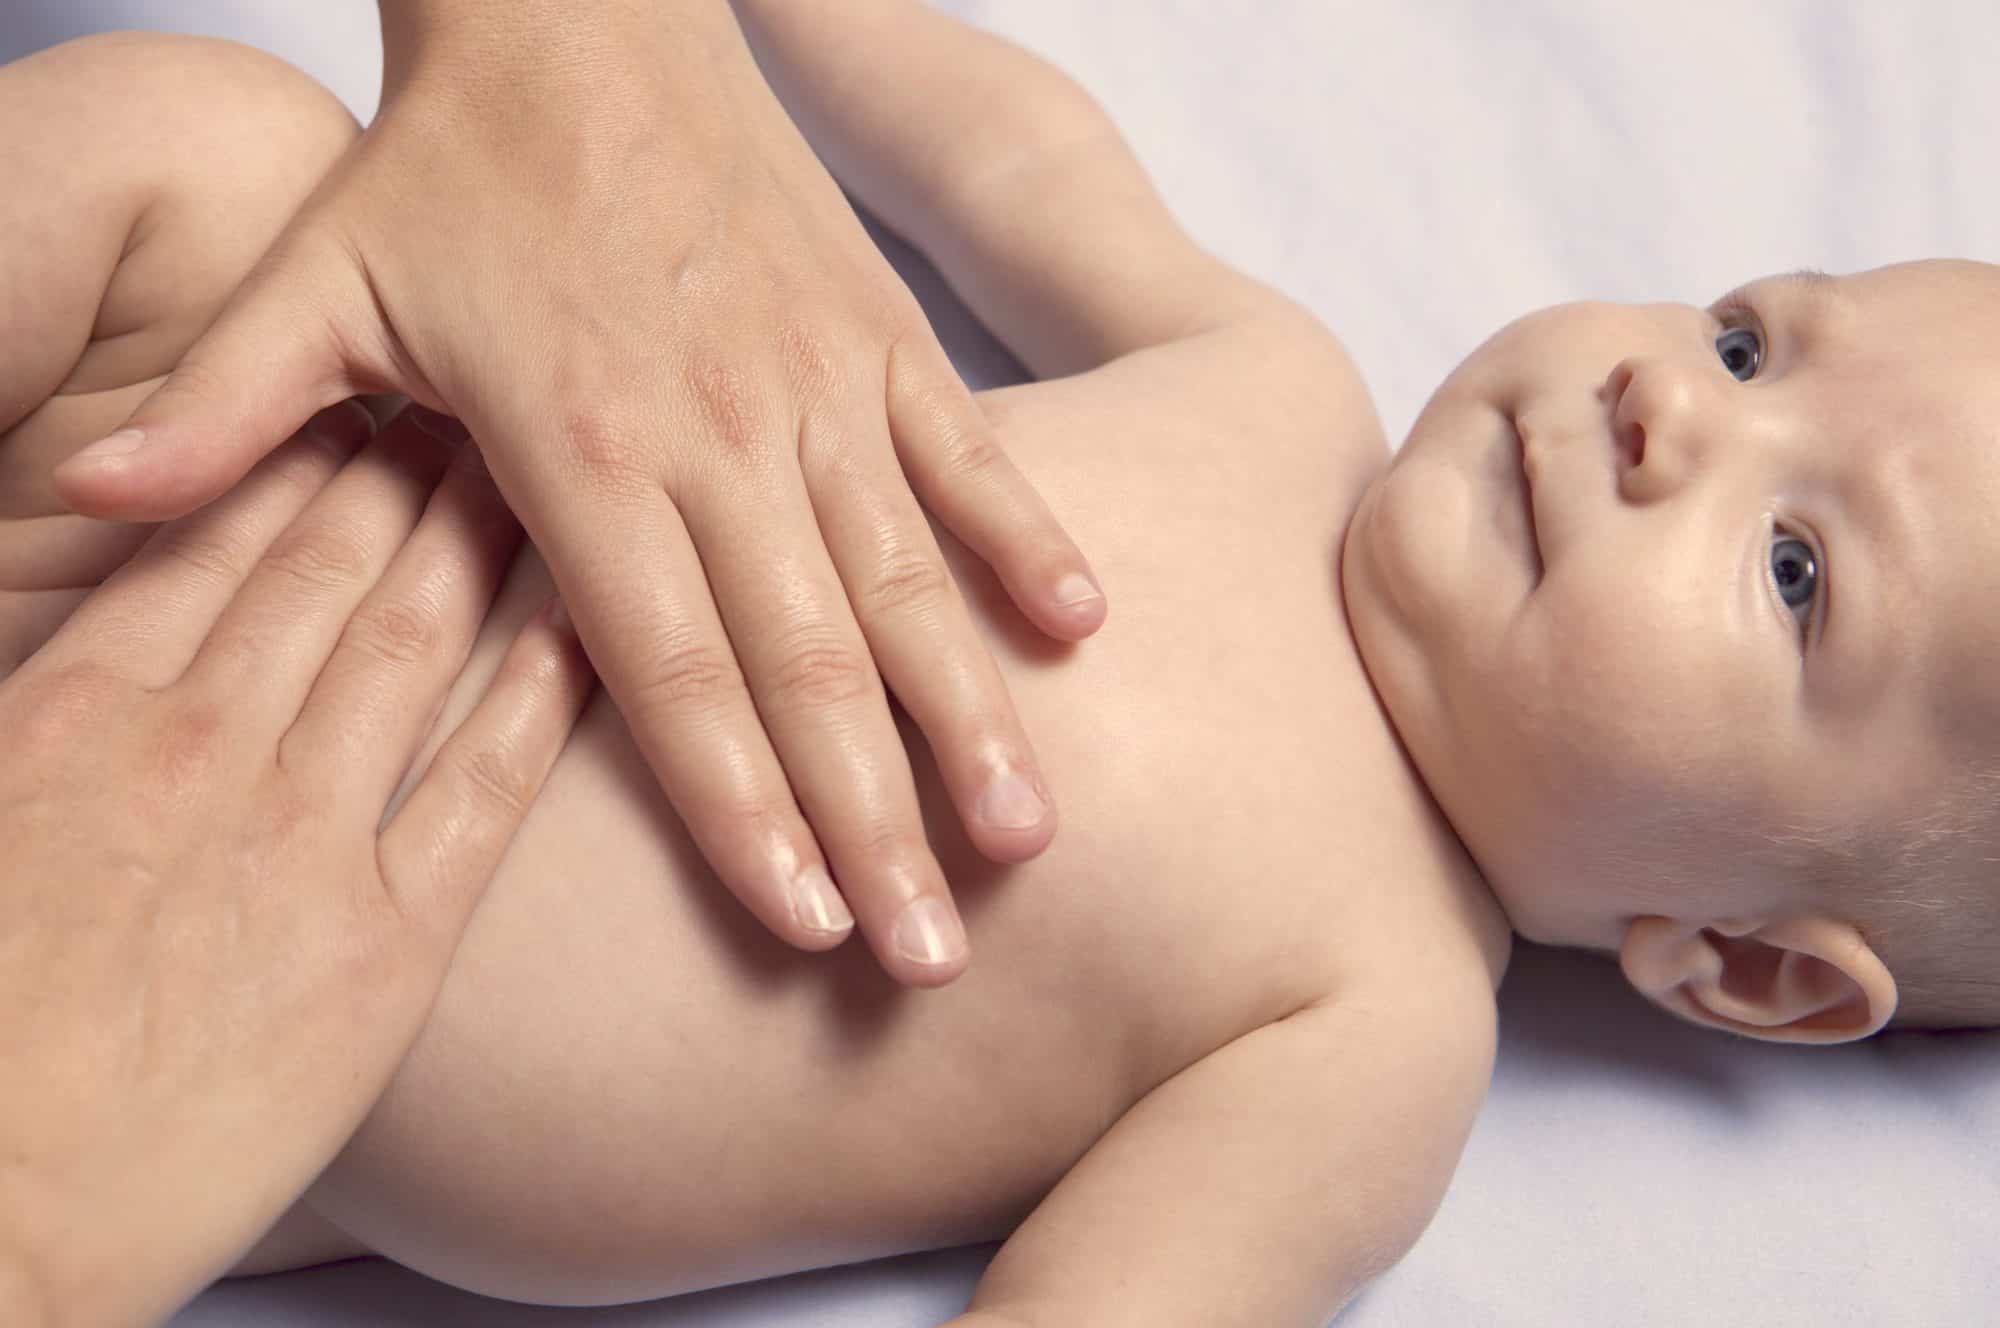 Mocos en bebés: cómo eliminarlos y descongestionar la nariz